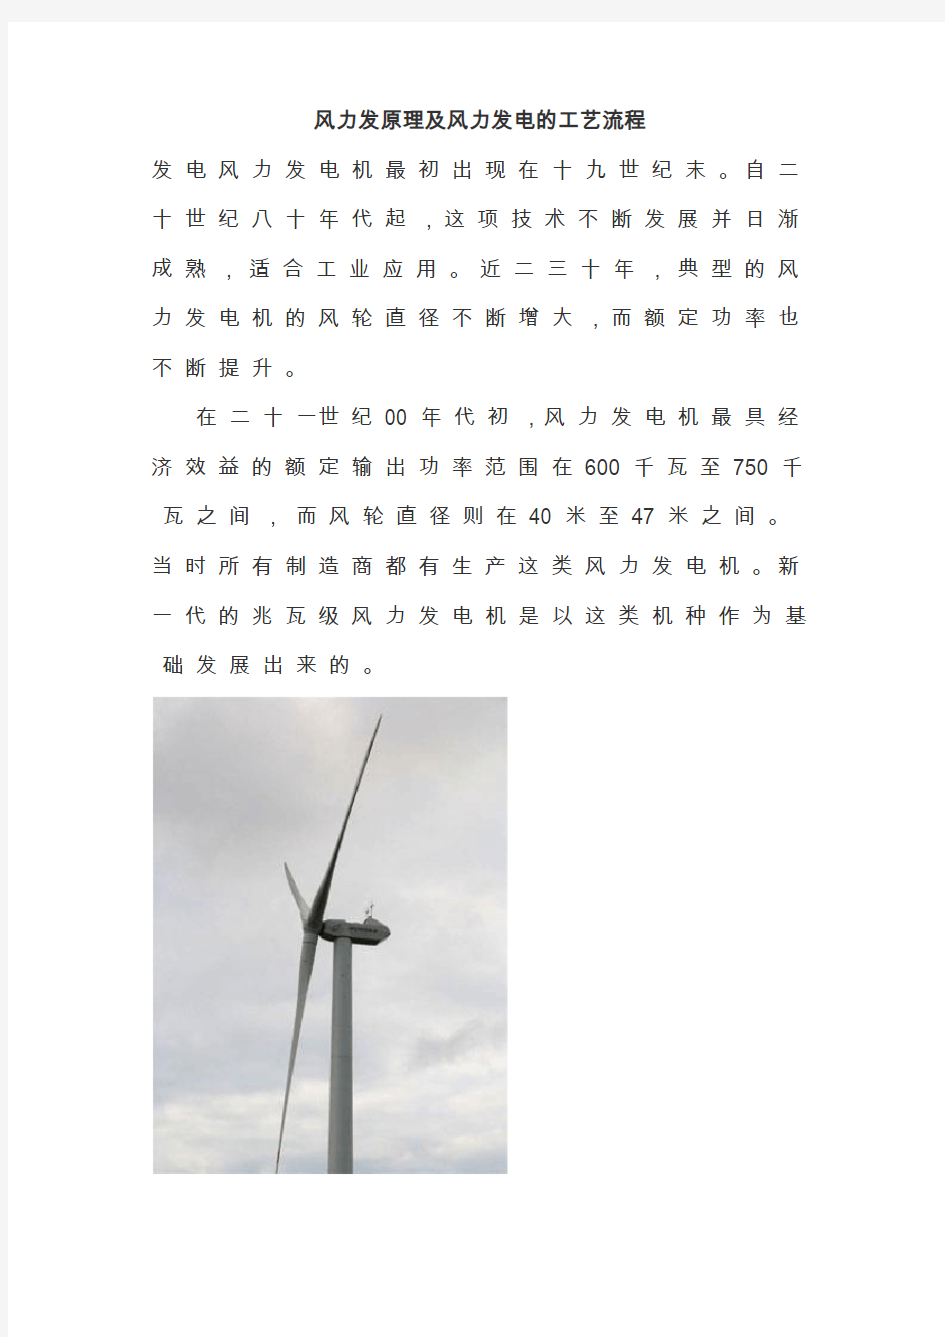 风力发电原理及风力发电的工艺流程